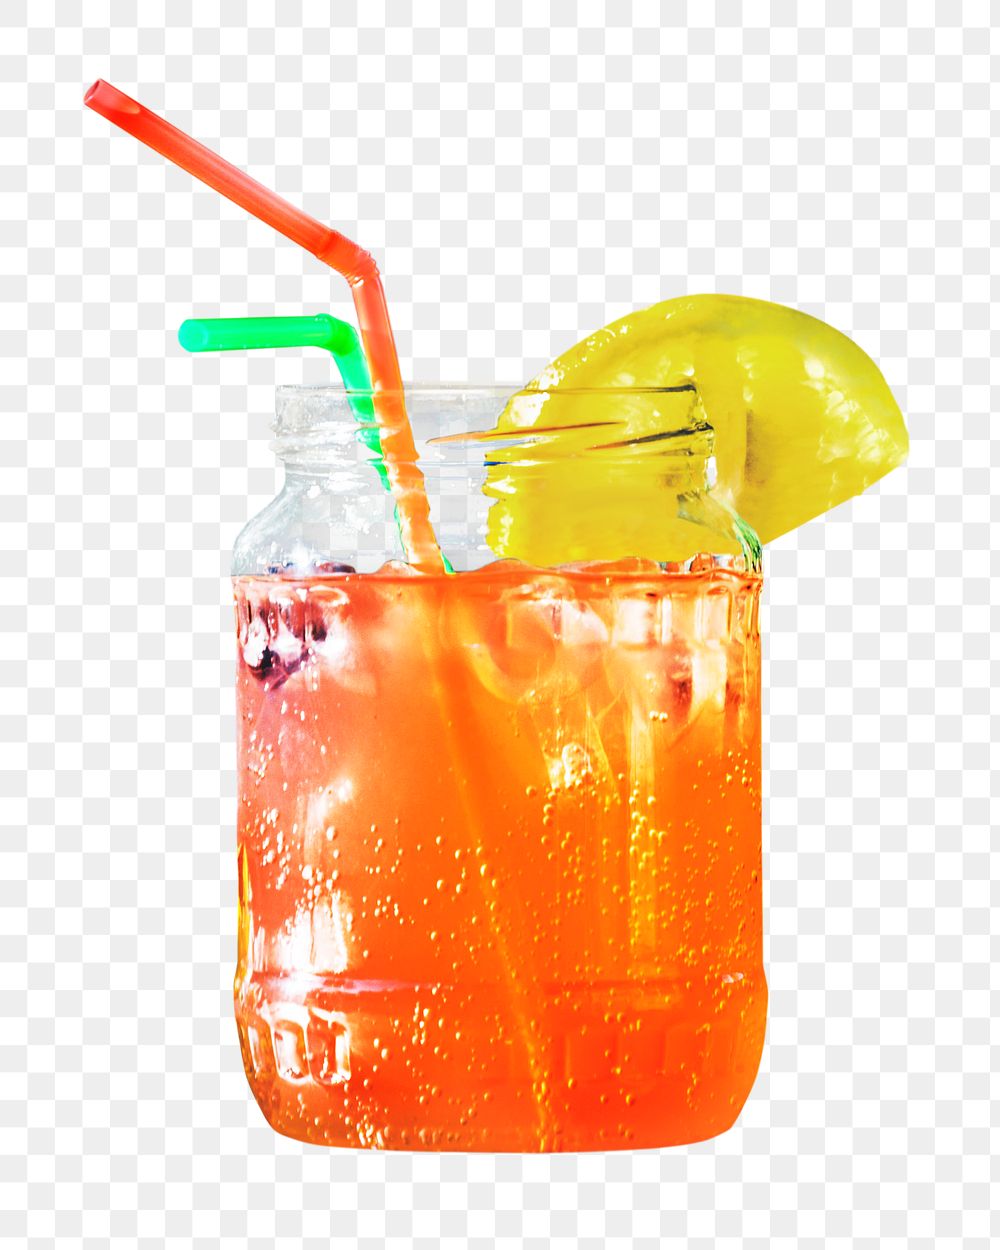 Orange cocktail png, transparent background